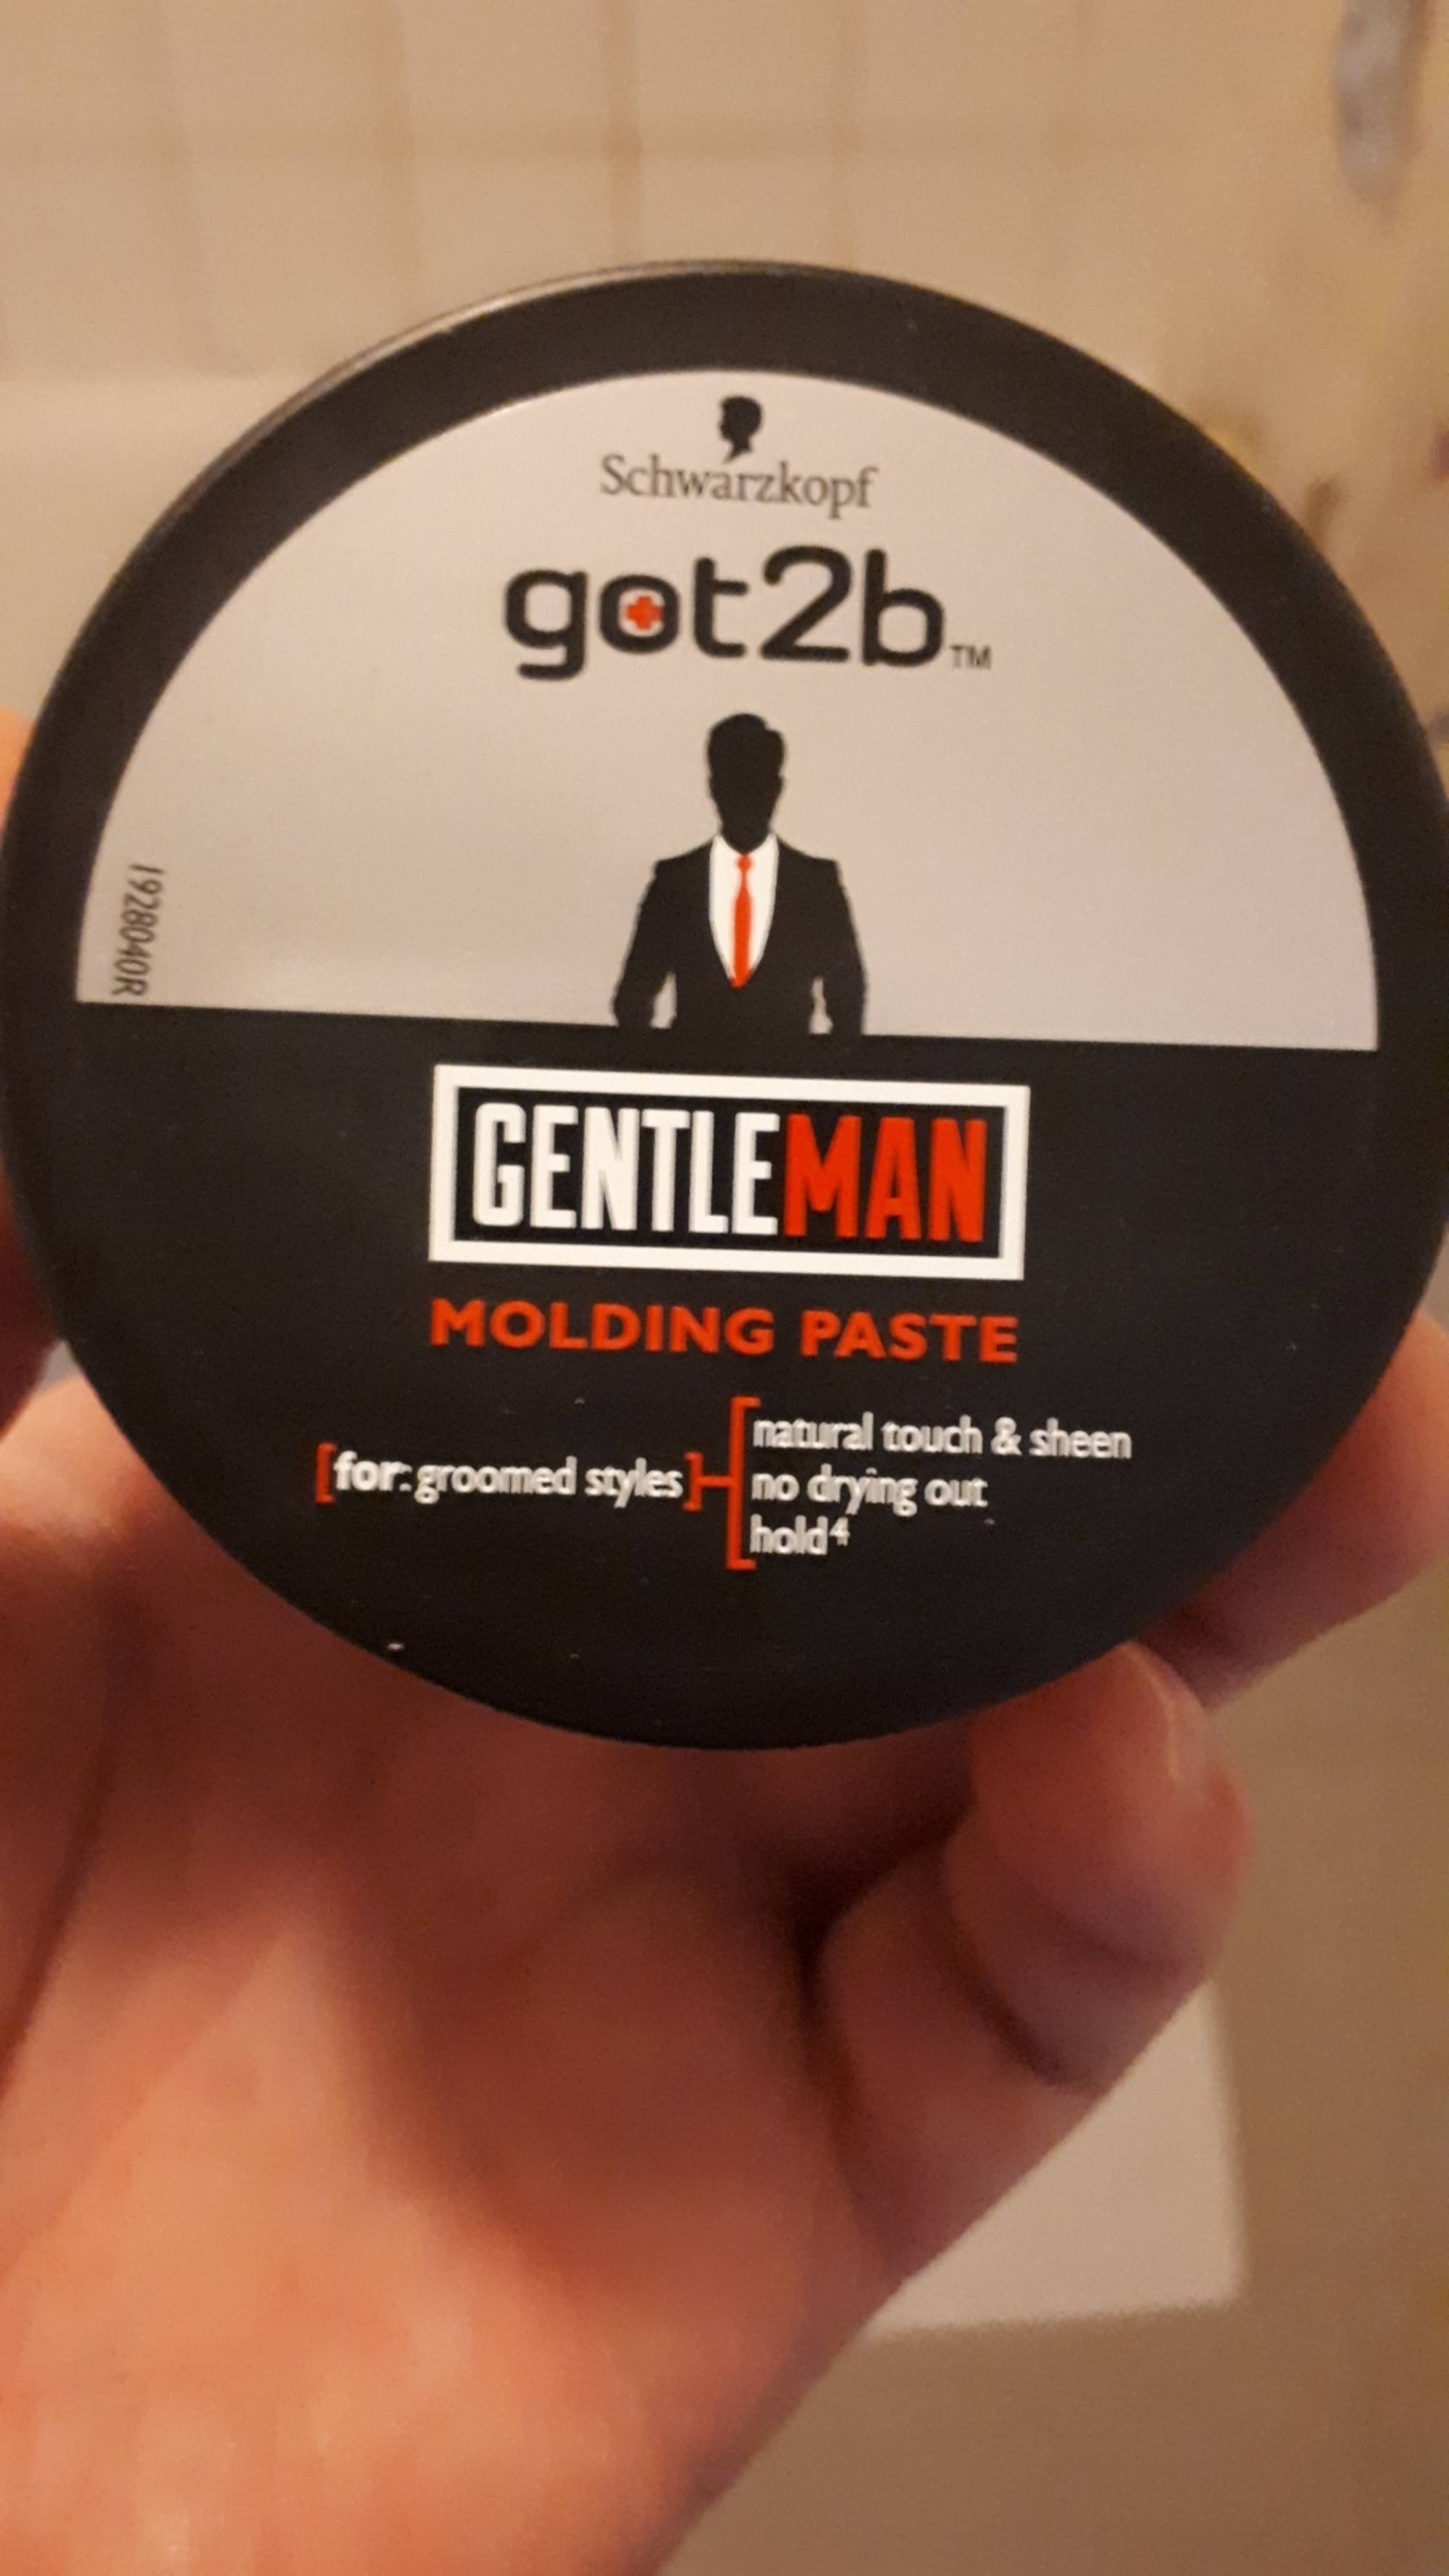 SCHWARZKOPF - Got2b gentleman - Molding paste